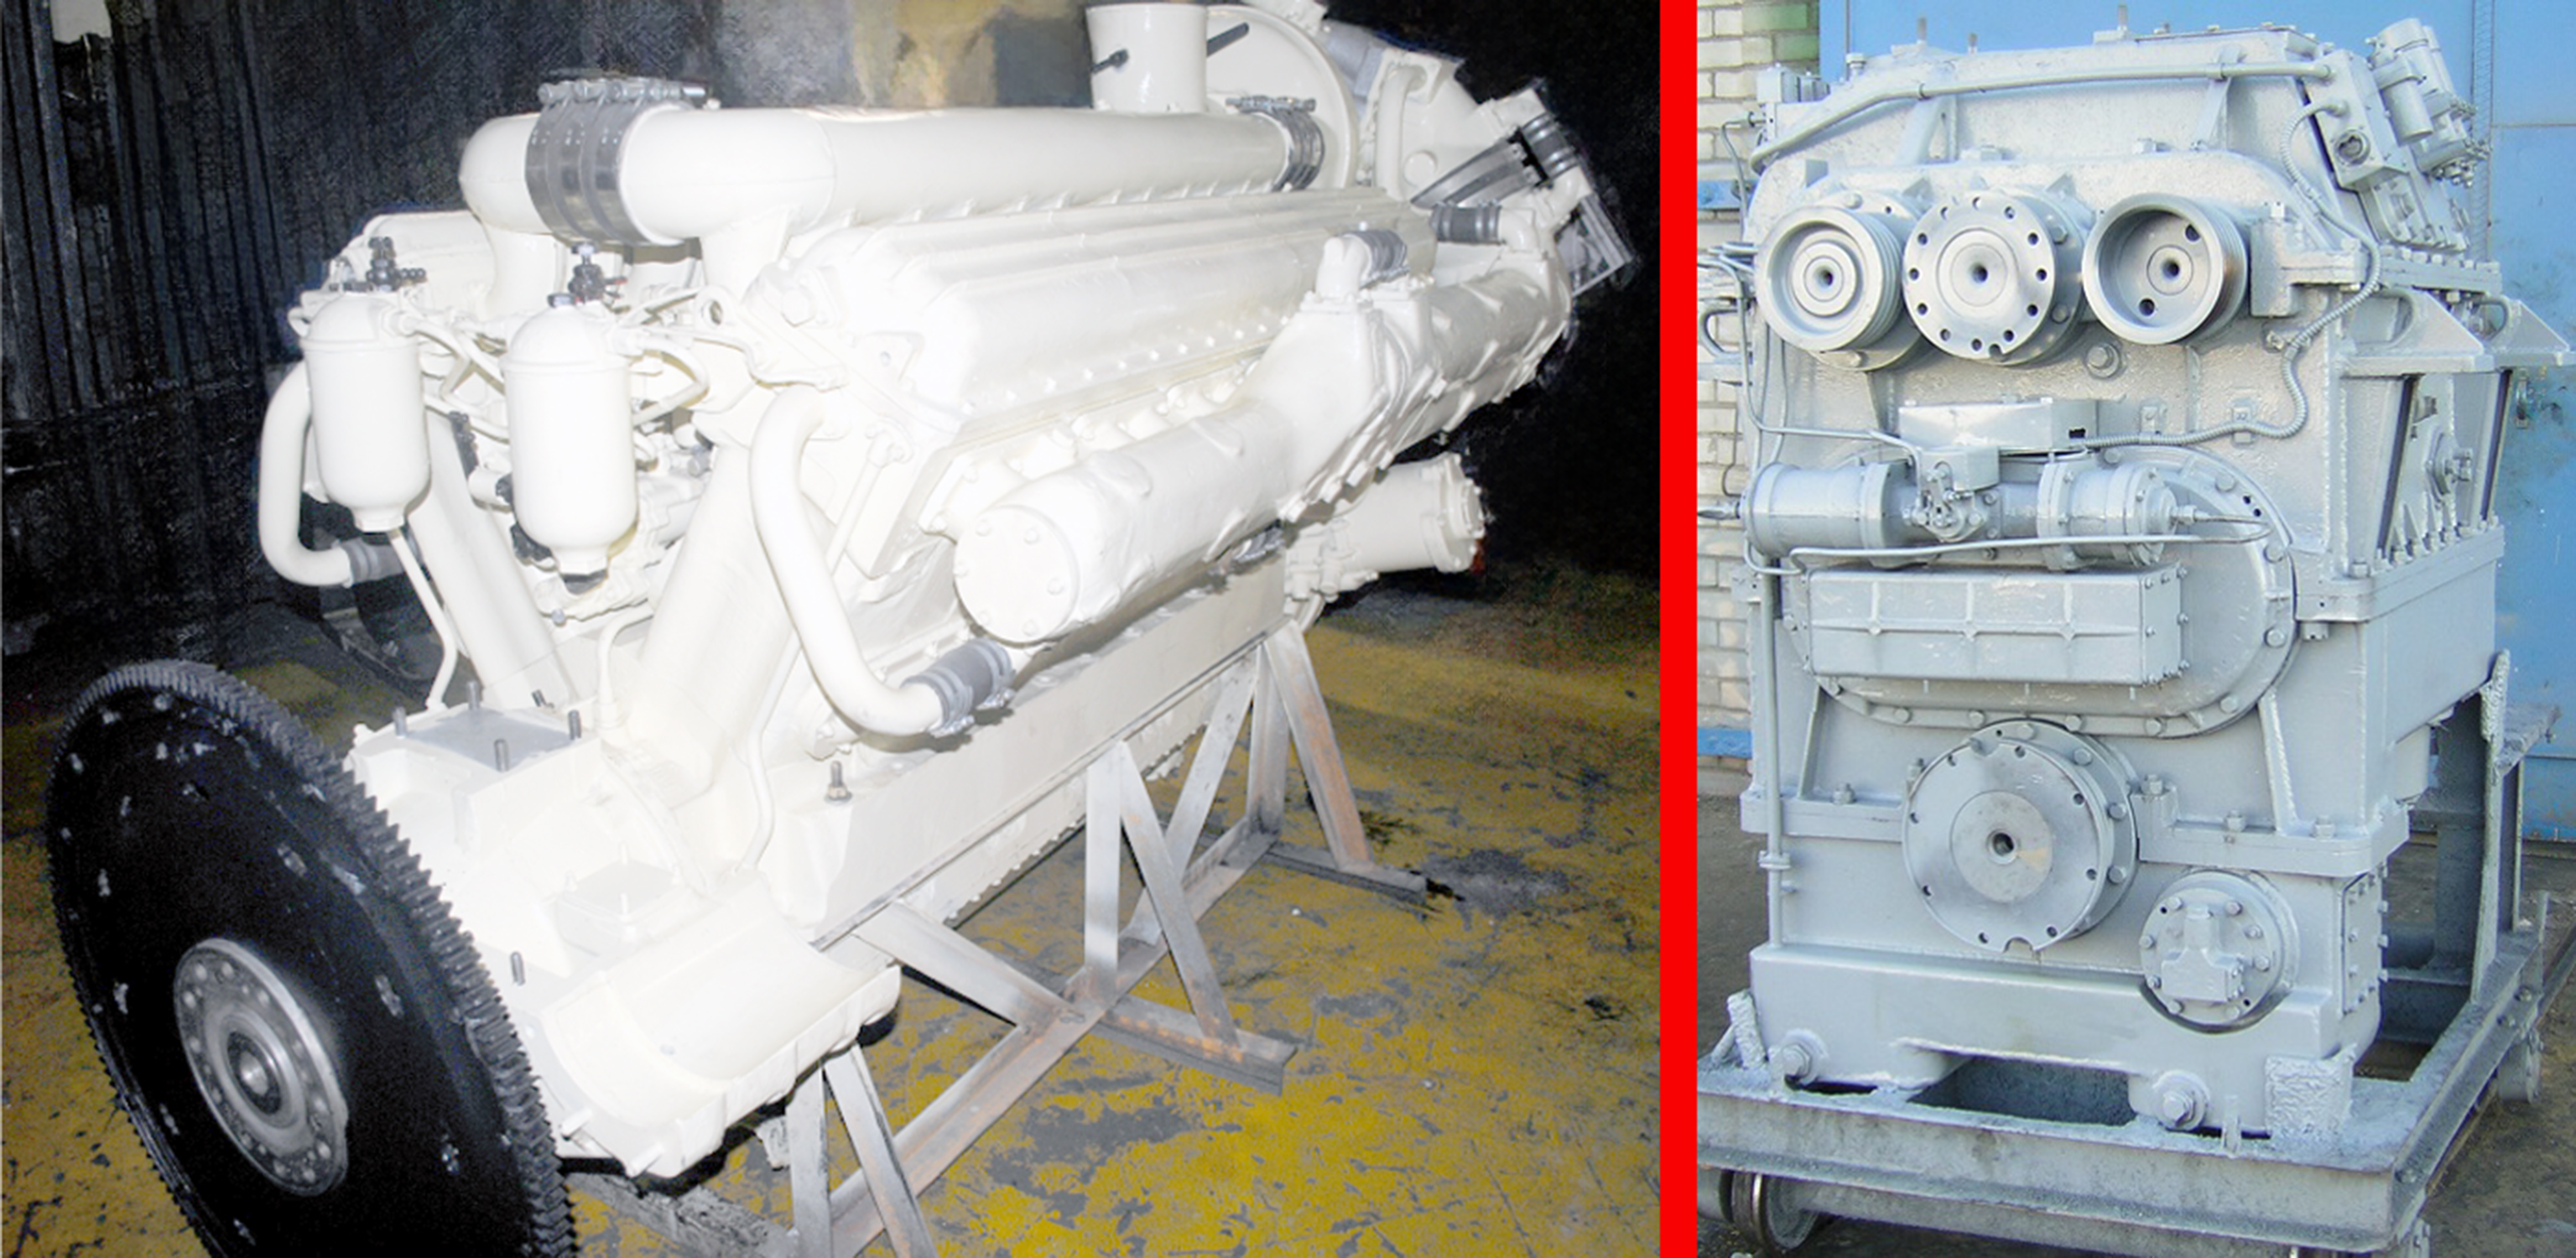 Общий вид дизельного двигателя М756Б (слева) и гидравлической передачи ГДП-1000 (справа)